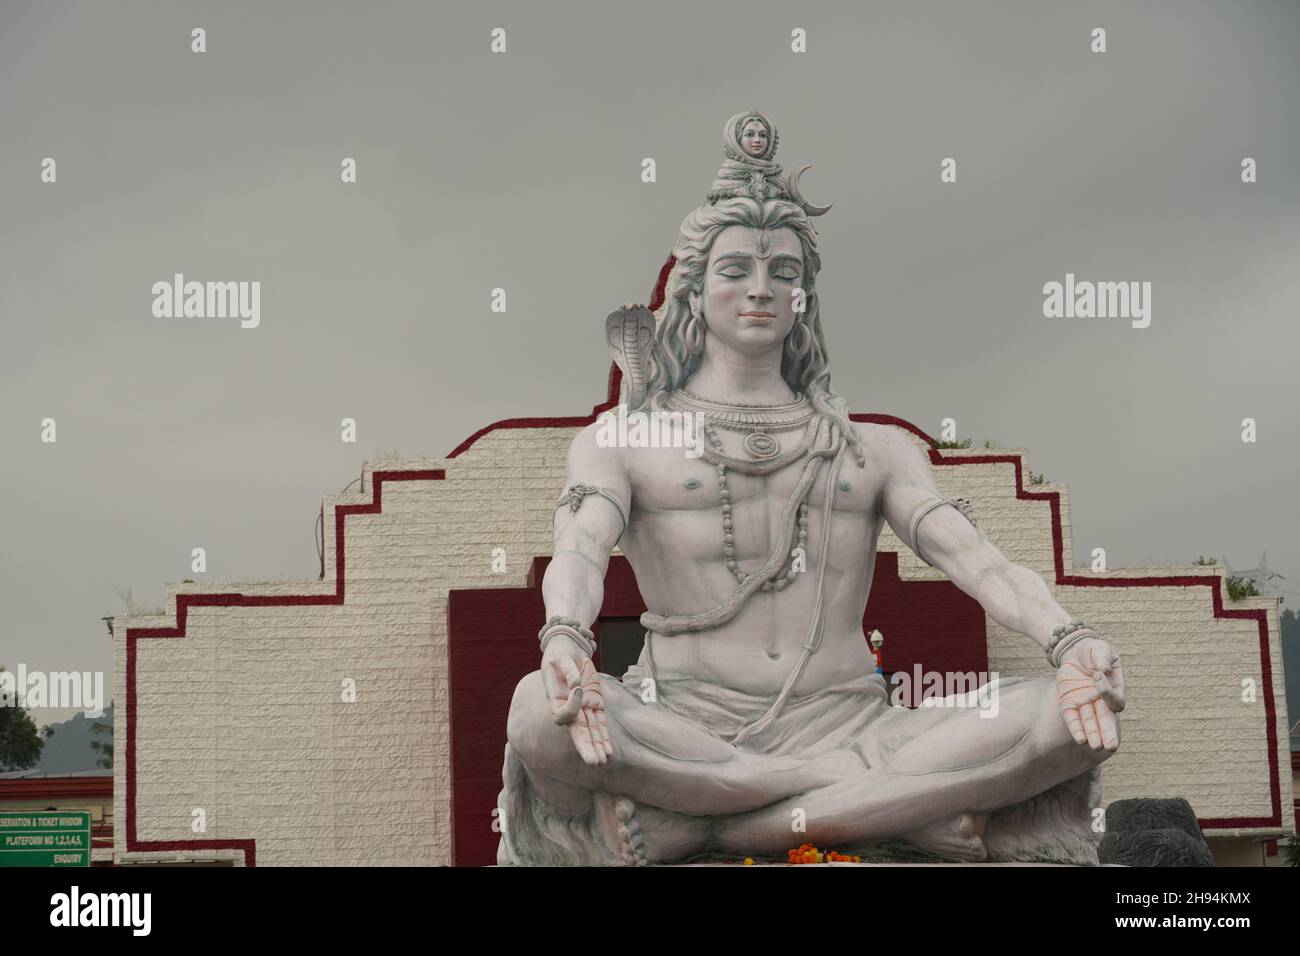 Escultura de dios hindú Shiva sentada en meditación en el río Ganges en Rishikesh, India, Foto de stock